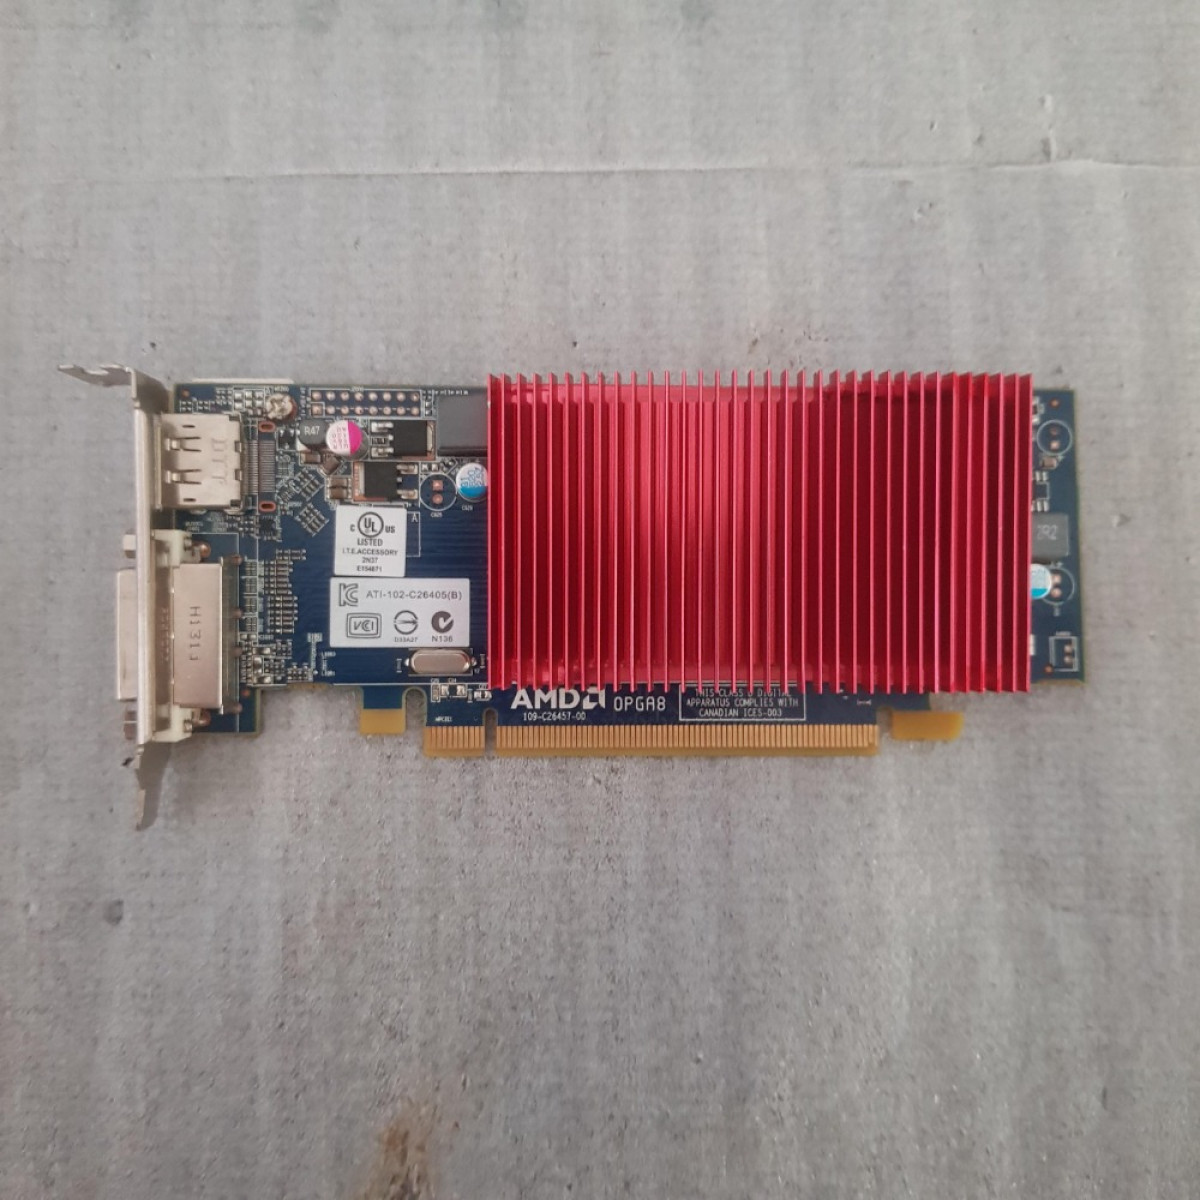 DIAMOND Radeon HD 6450 HD6450 1GB GDDR3 64 Bit T1